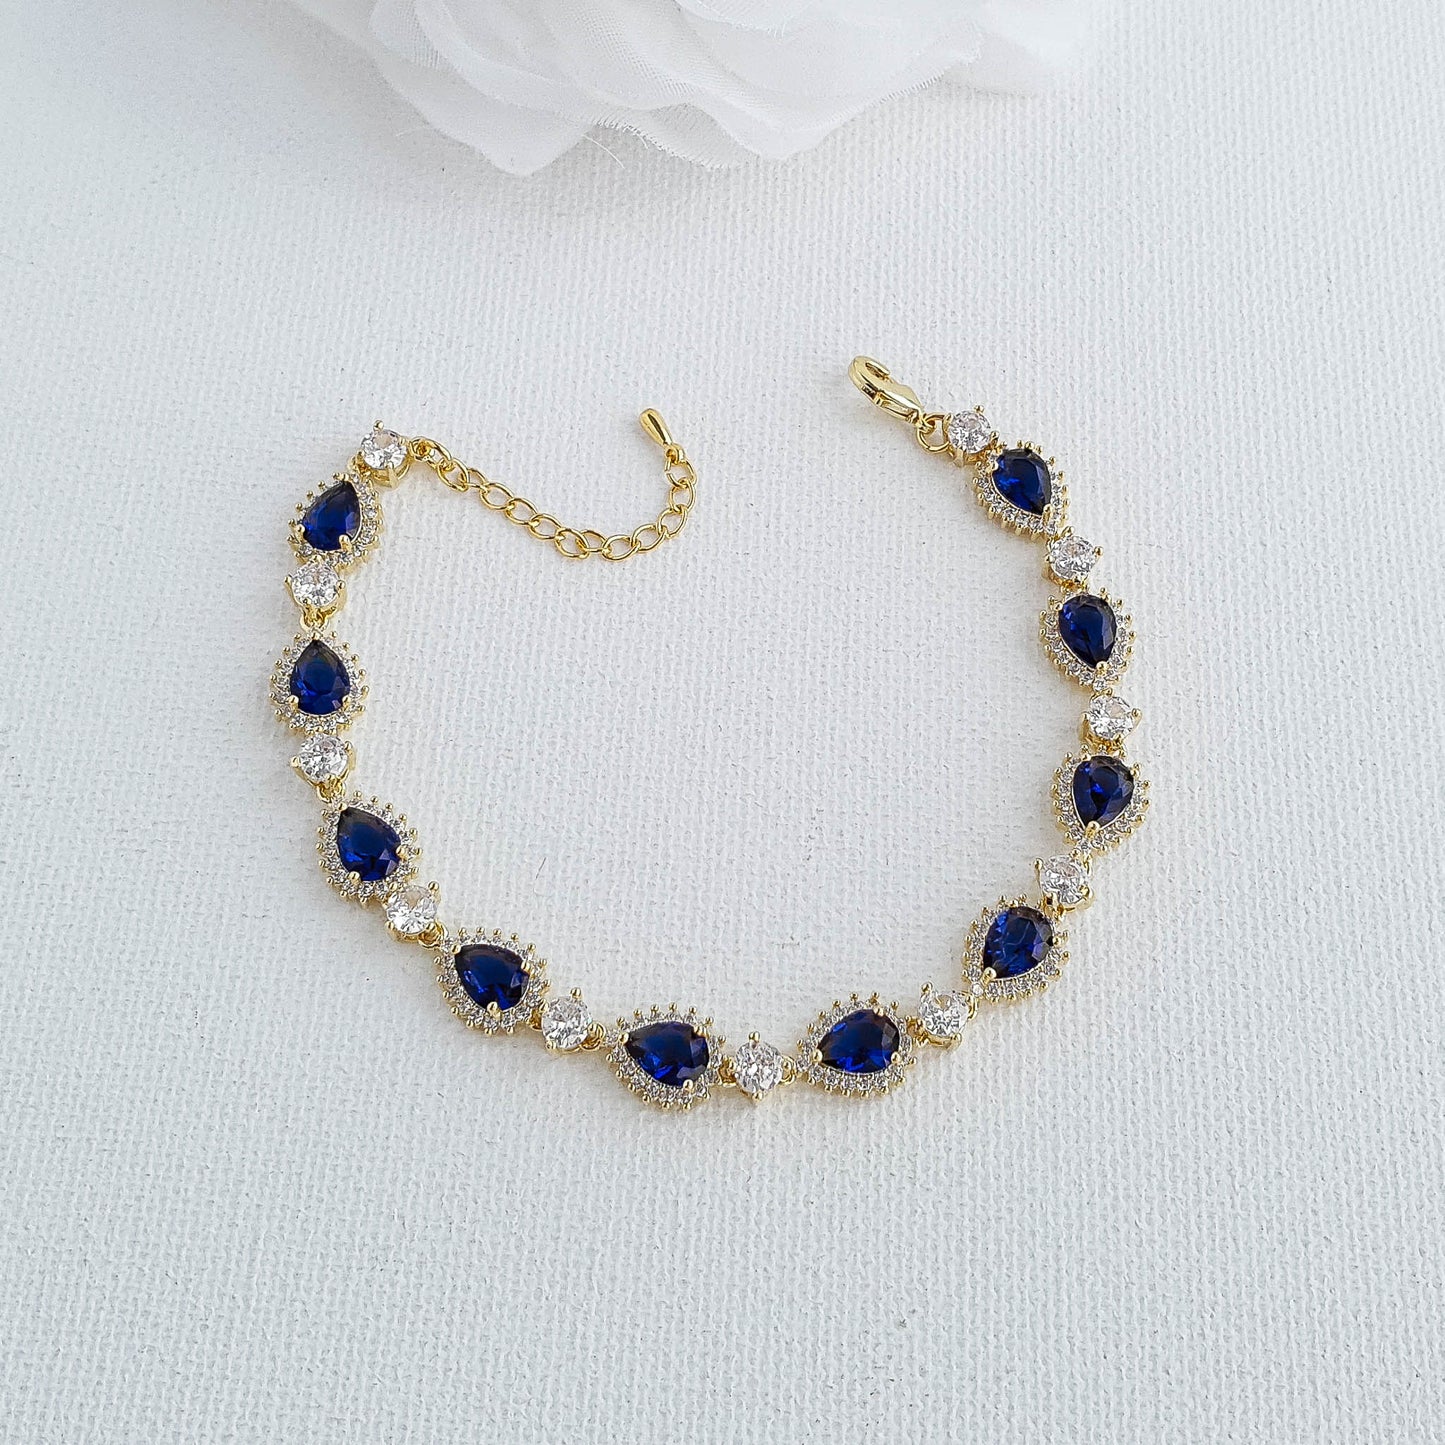 Blue Wedding Bracelet in Rose Gold-AOI